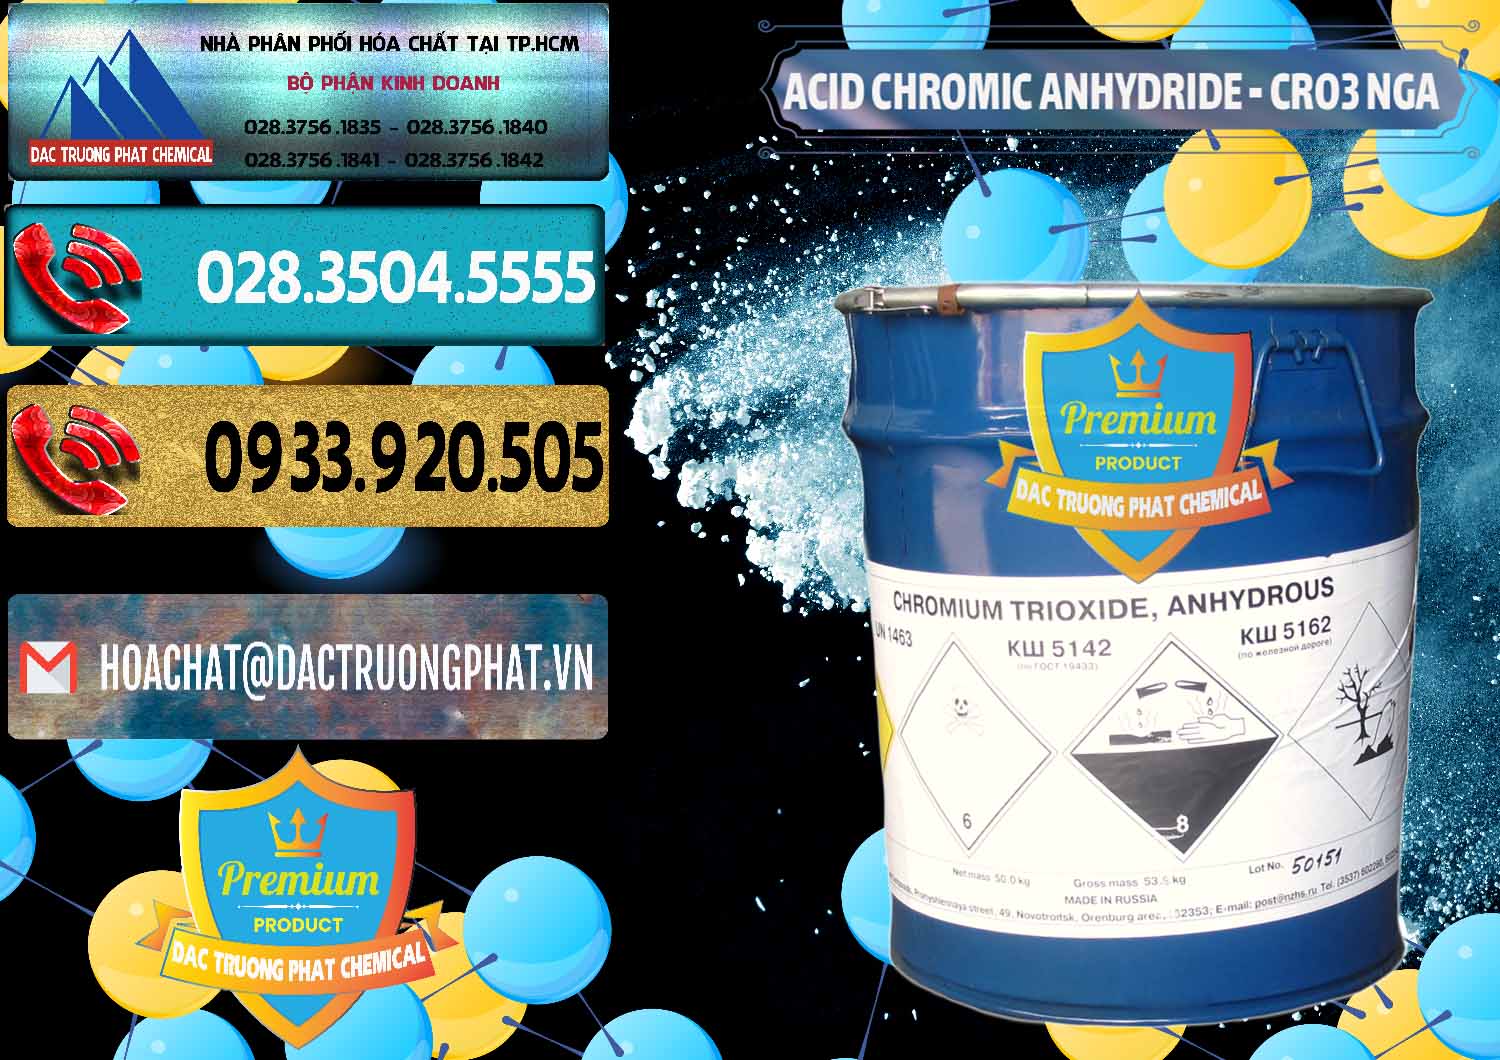 Nơi chuyên nhập khẩu & bán Acid Chromic Anhydride - Cromic CRO3 Nga Russia - 0006 - Nơi chuyên cung cấp & nhập khẩu hóa chất tại TP.HCM - hoachatdetnhuom.com